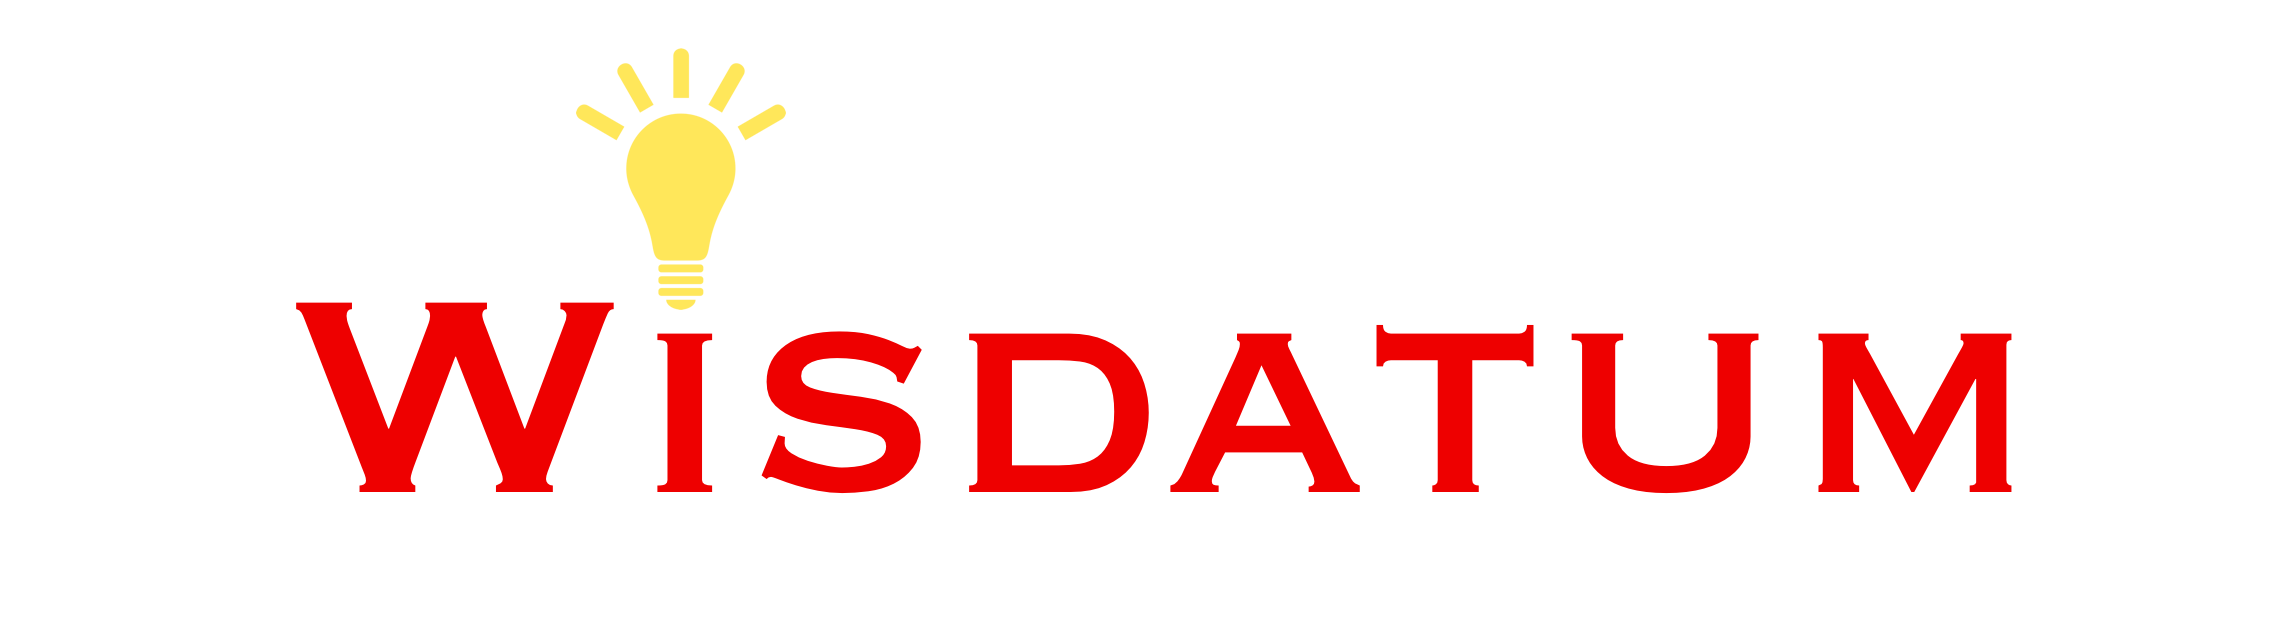 Wisdatum Logo